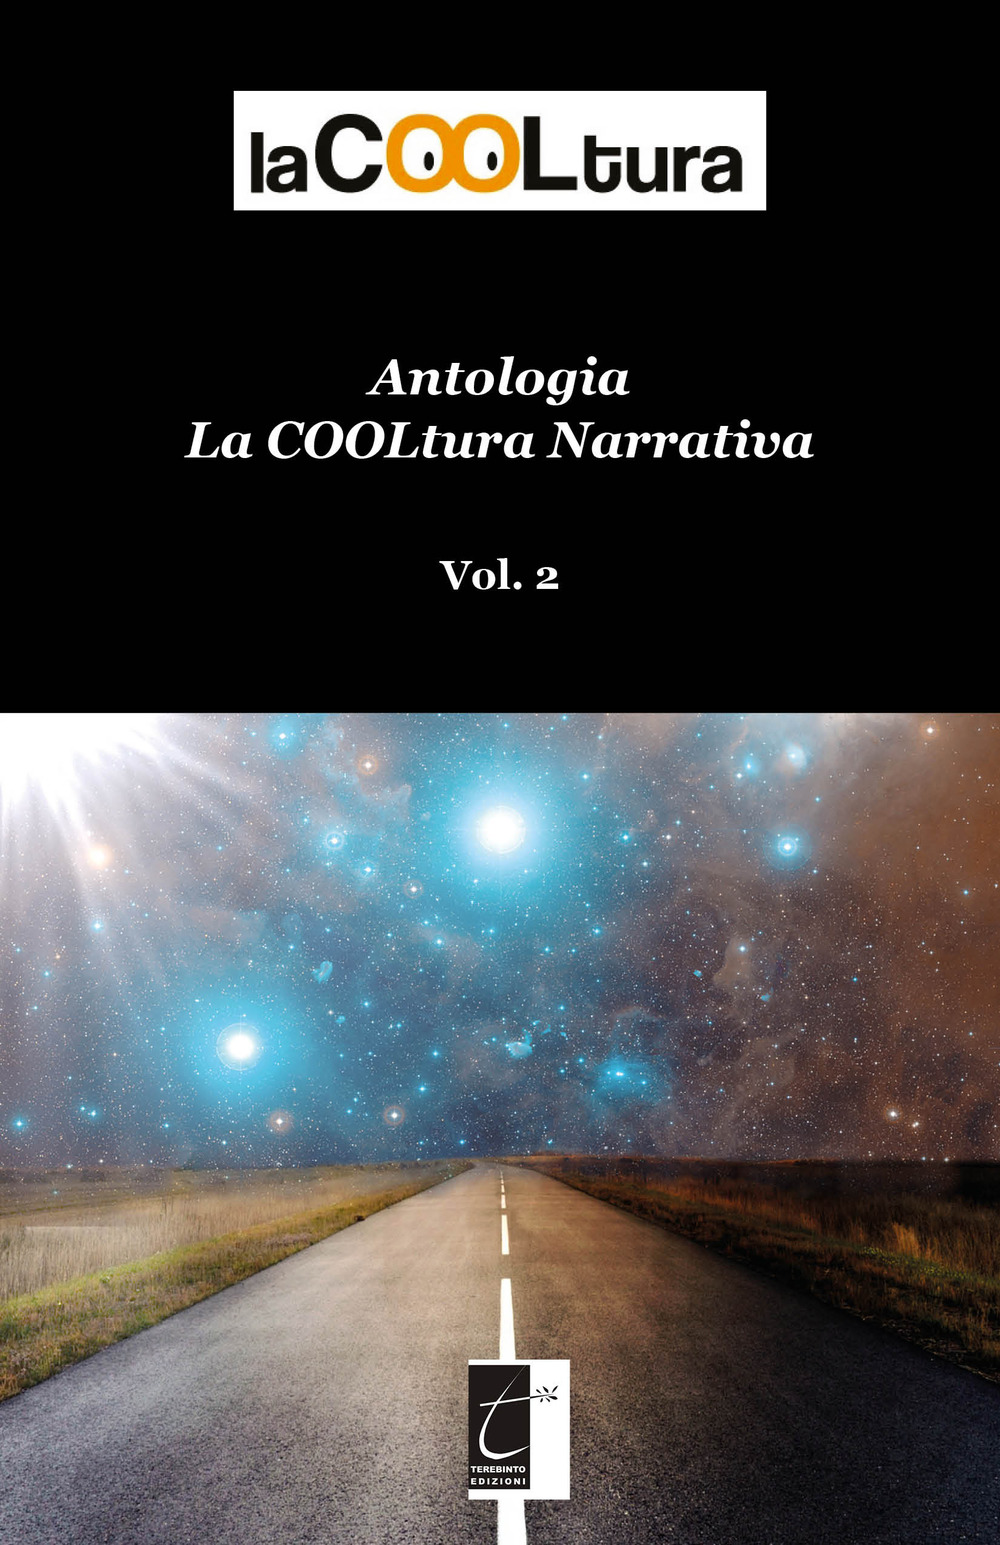 La COOLtura narrativa. Antologia. Vol. 2